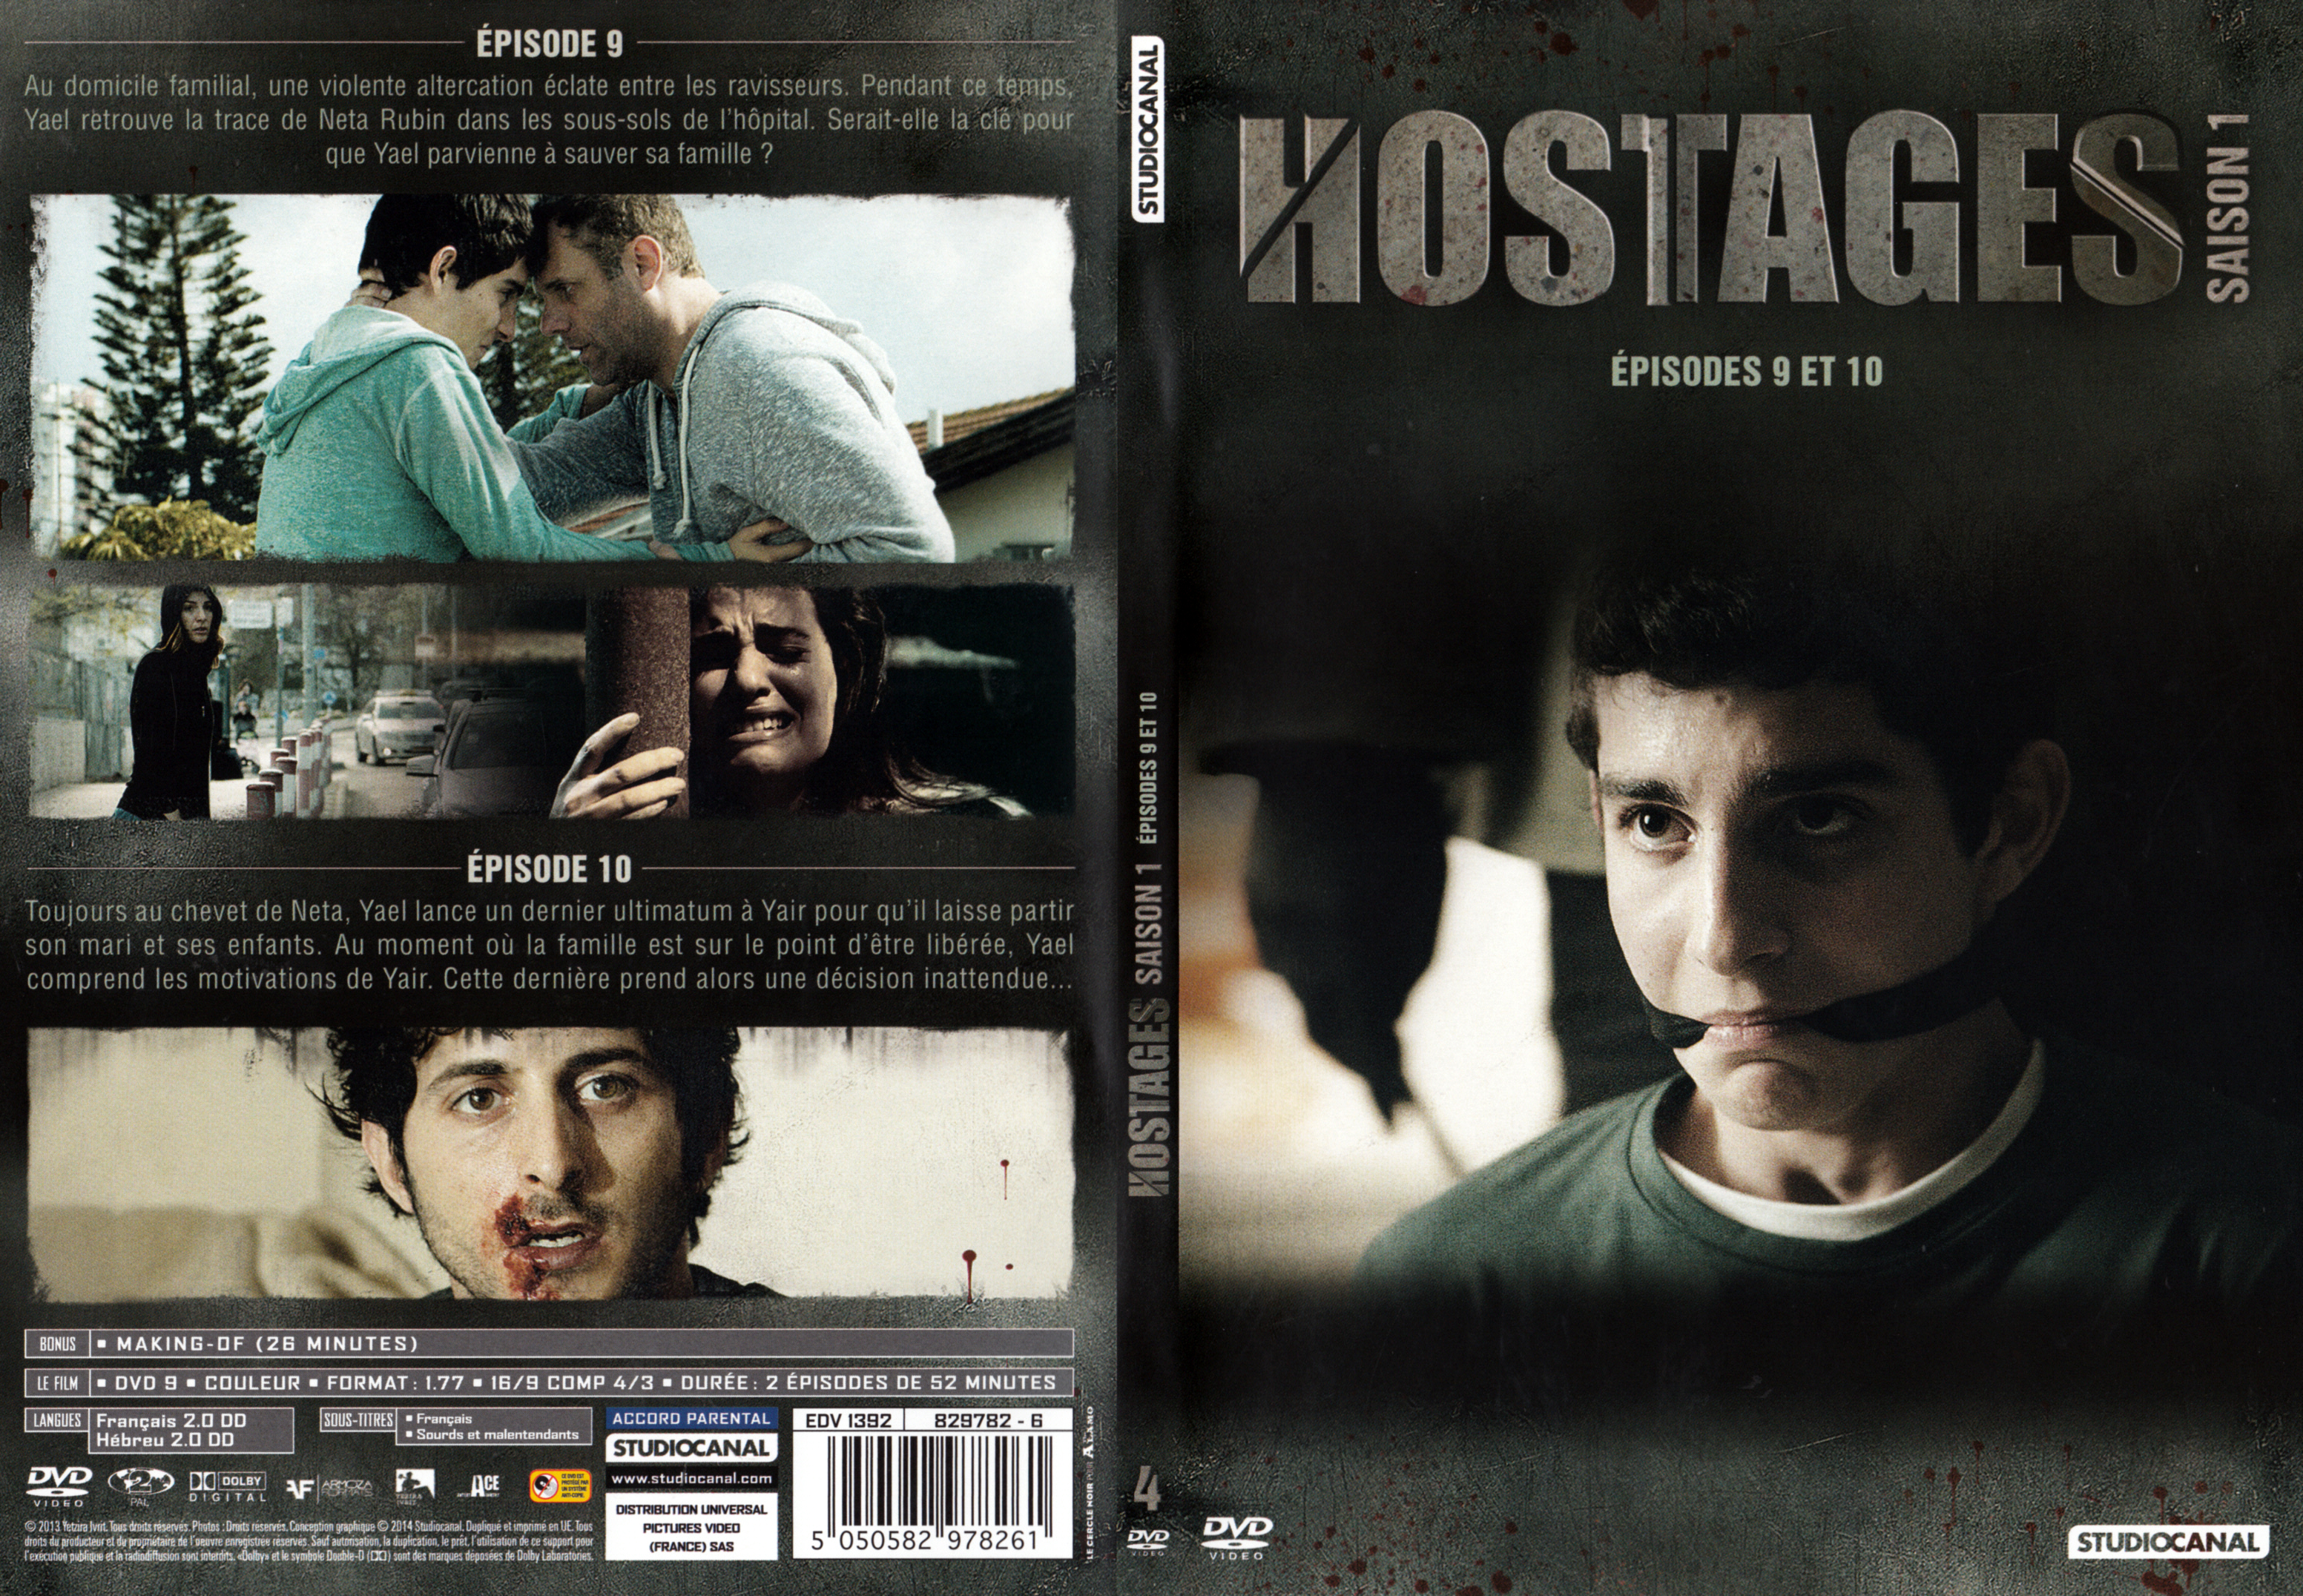 Jaquette DVD Hostages Saison 1 DVD 4